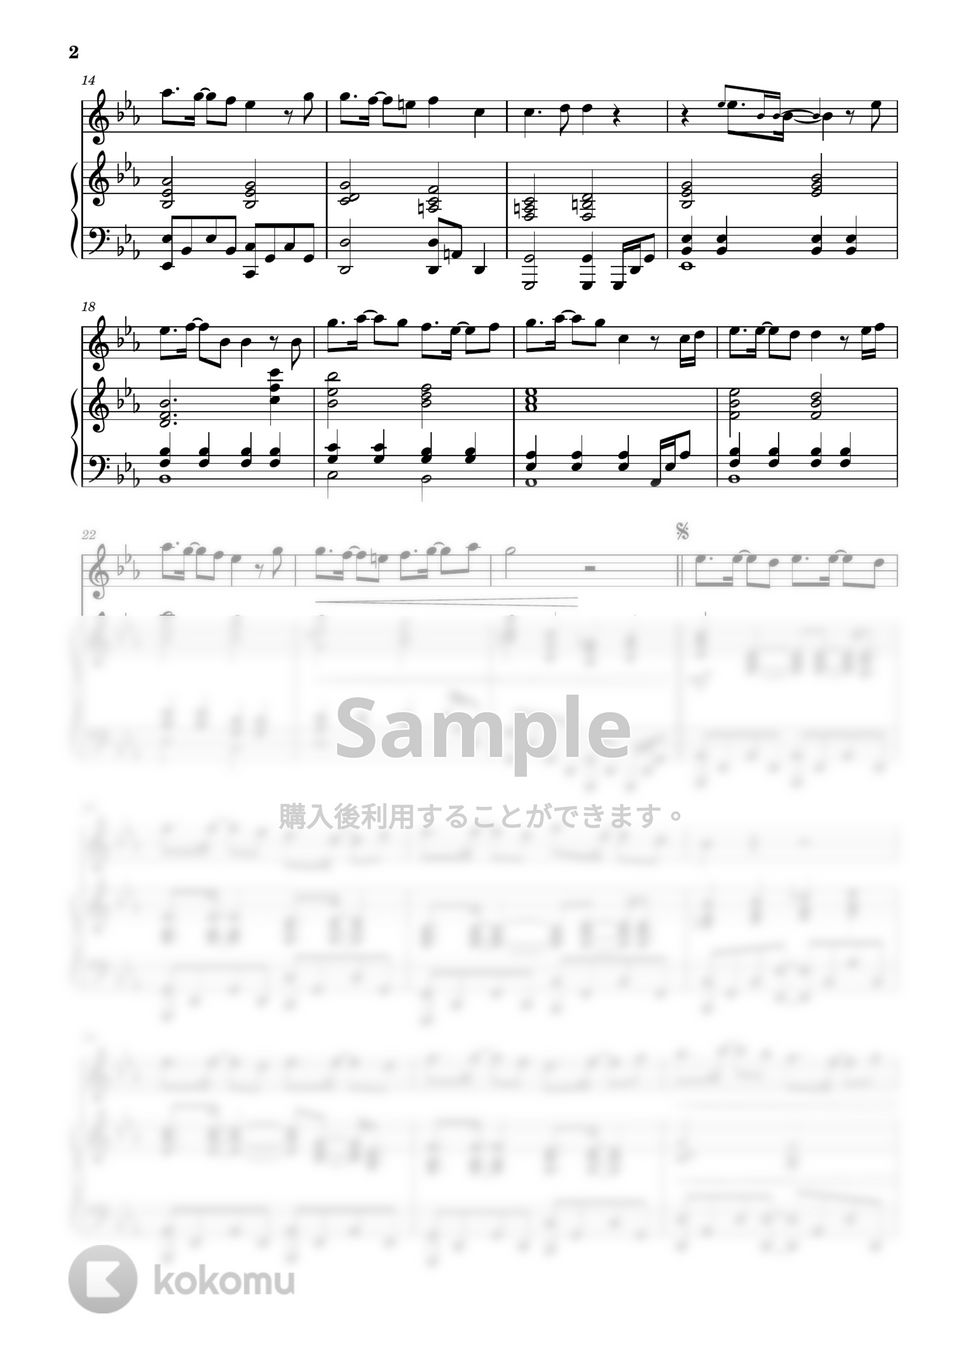 新世紀エヴァンゲリオン - 残酷な天使のテーゼ / 高橋洋子 (フルート&ピアノ伴奏) by PiaFlu